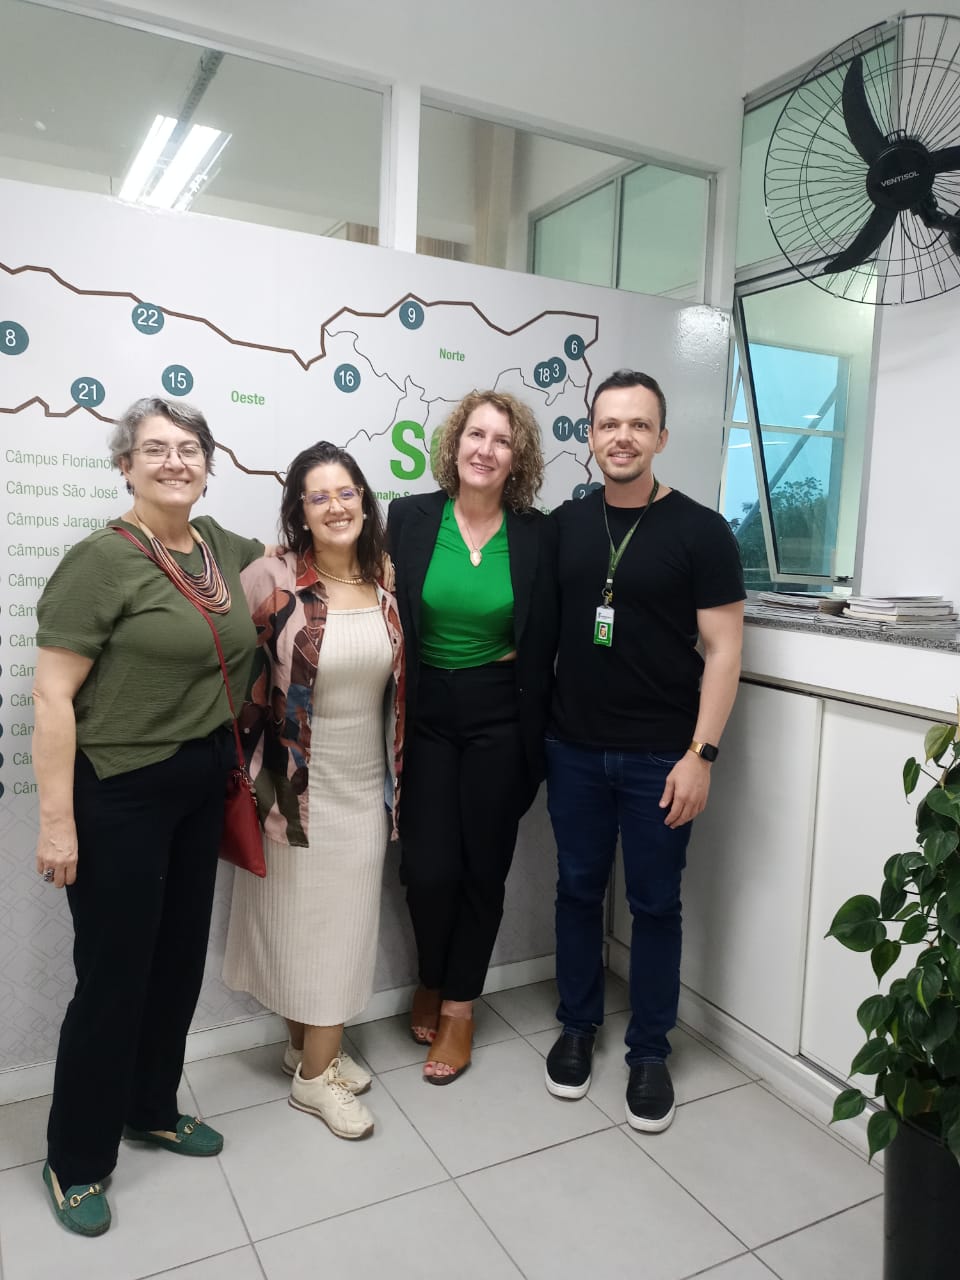 Servidores da Diretoria de Extensão do IFSC participaram de reunião com as professoras Vera Gasparetto e Débora de Carvalho Figueiredo do IEG para firmar a parceria